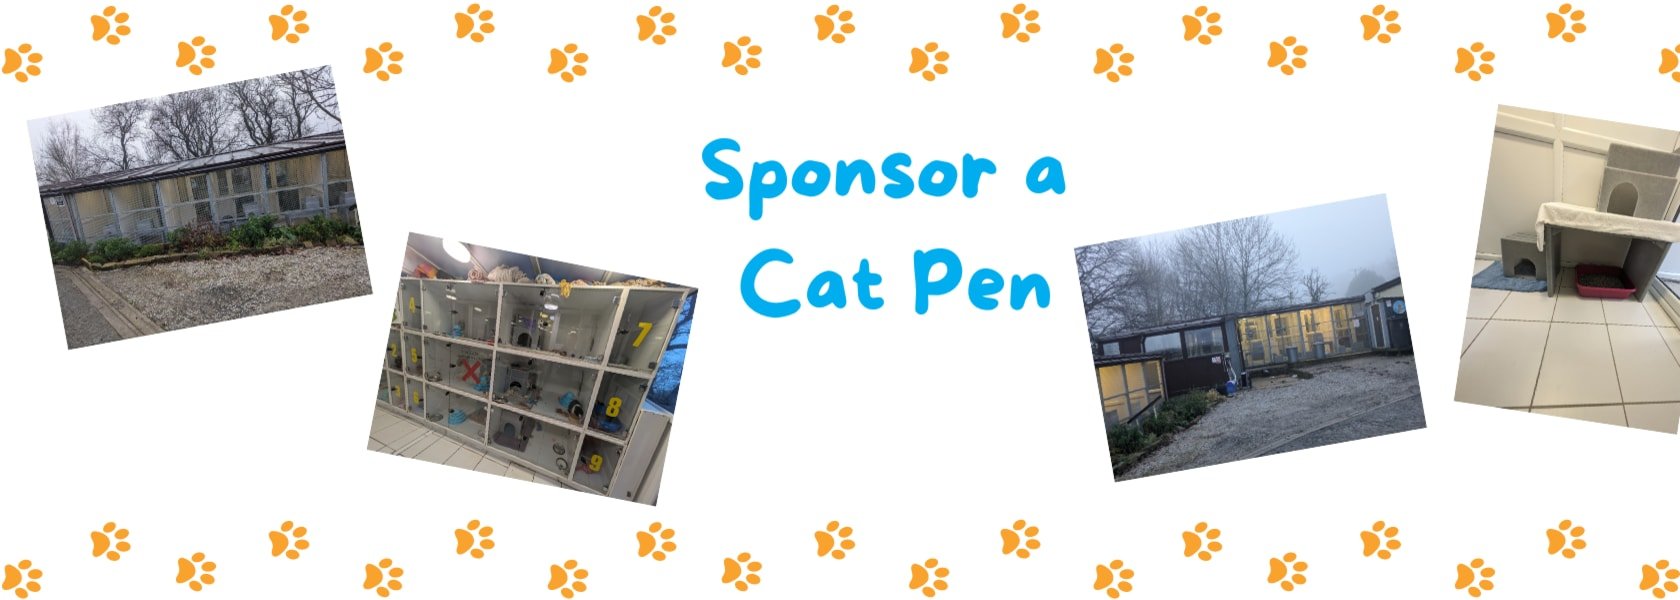 Cat Pen Sponsorship